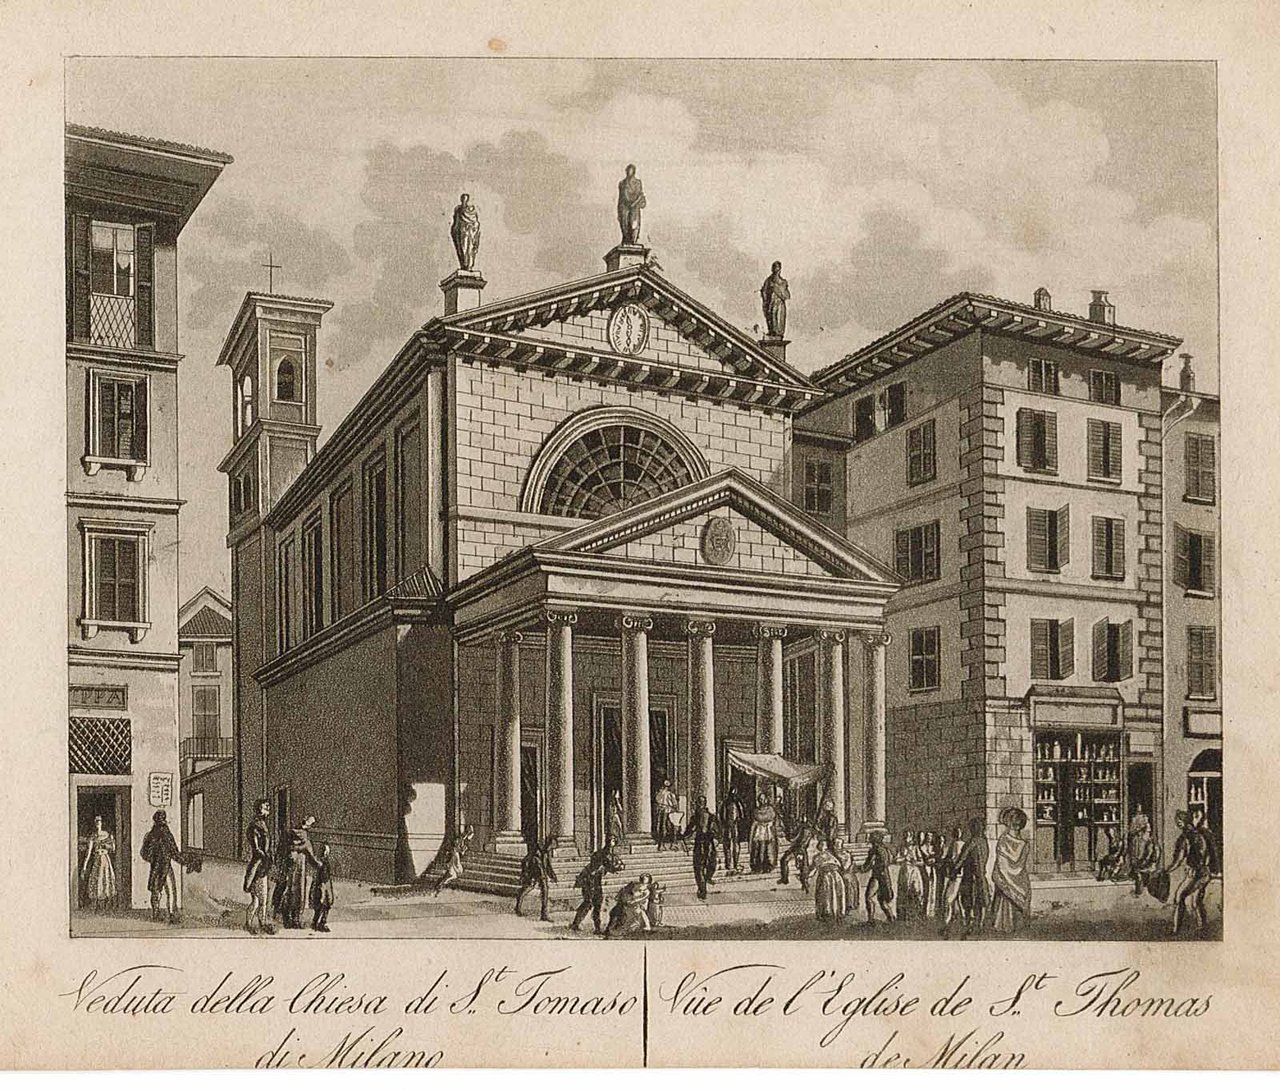 Veduta della Chiesa di St. Tomaso di Milano